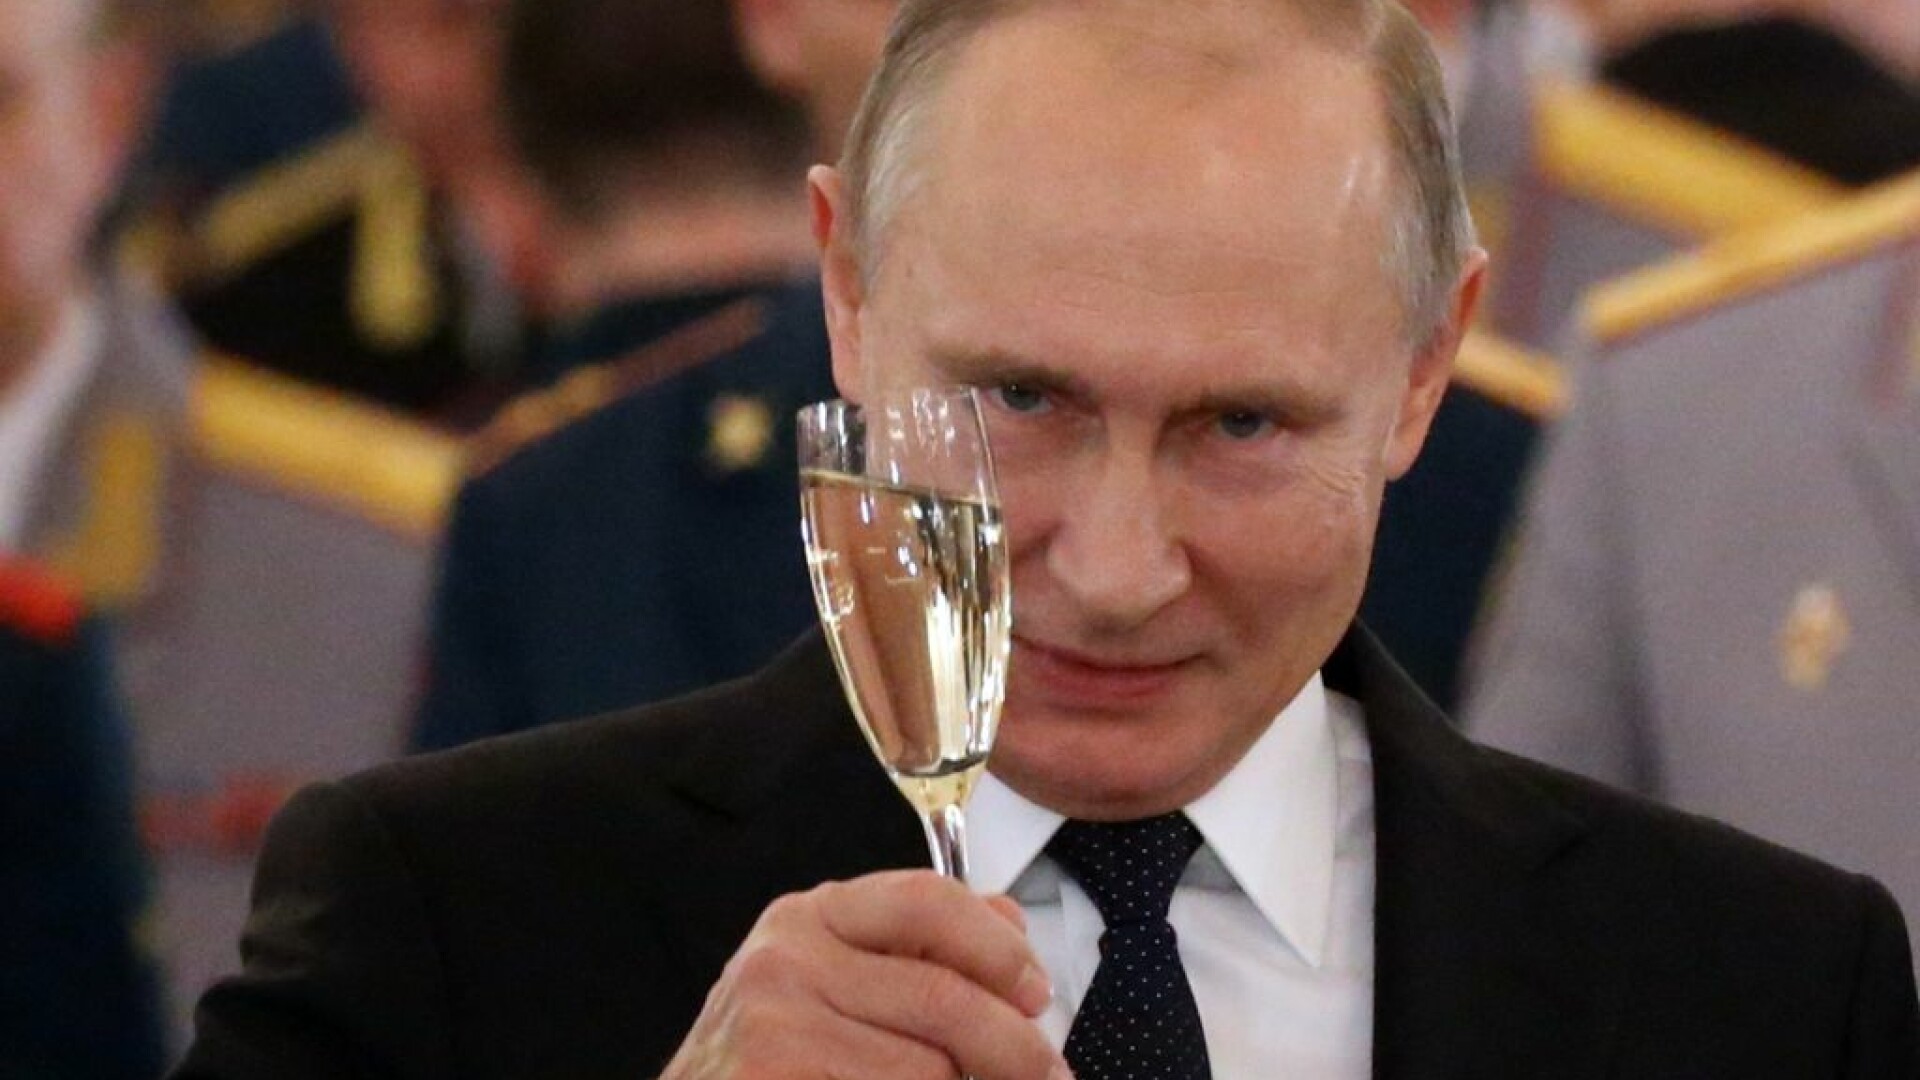 Deputaţii au adoptat legea care îi permite lui Vladimir Putin încă două mandate prezidenţiale. Câți ani va avea